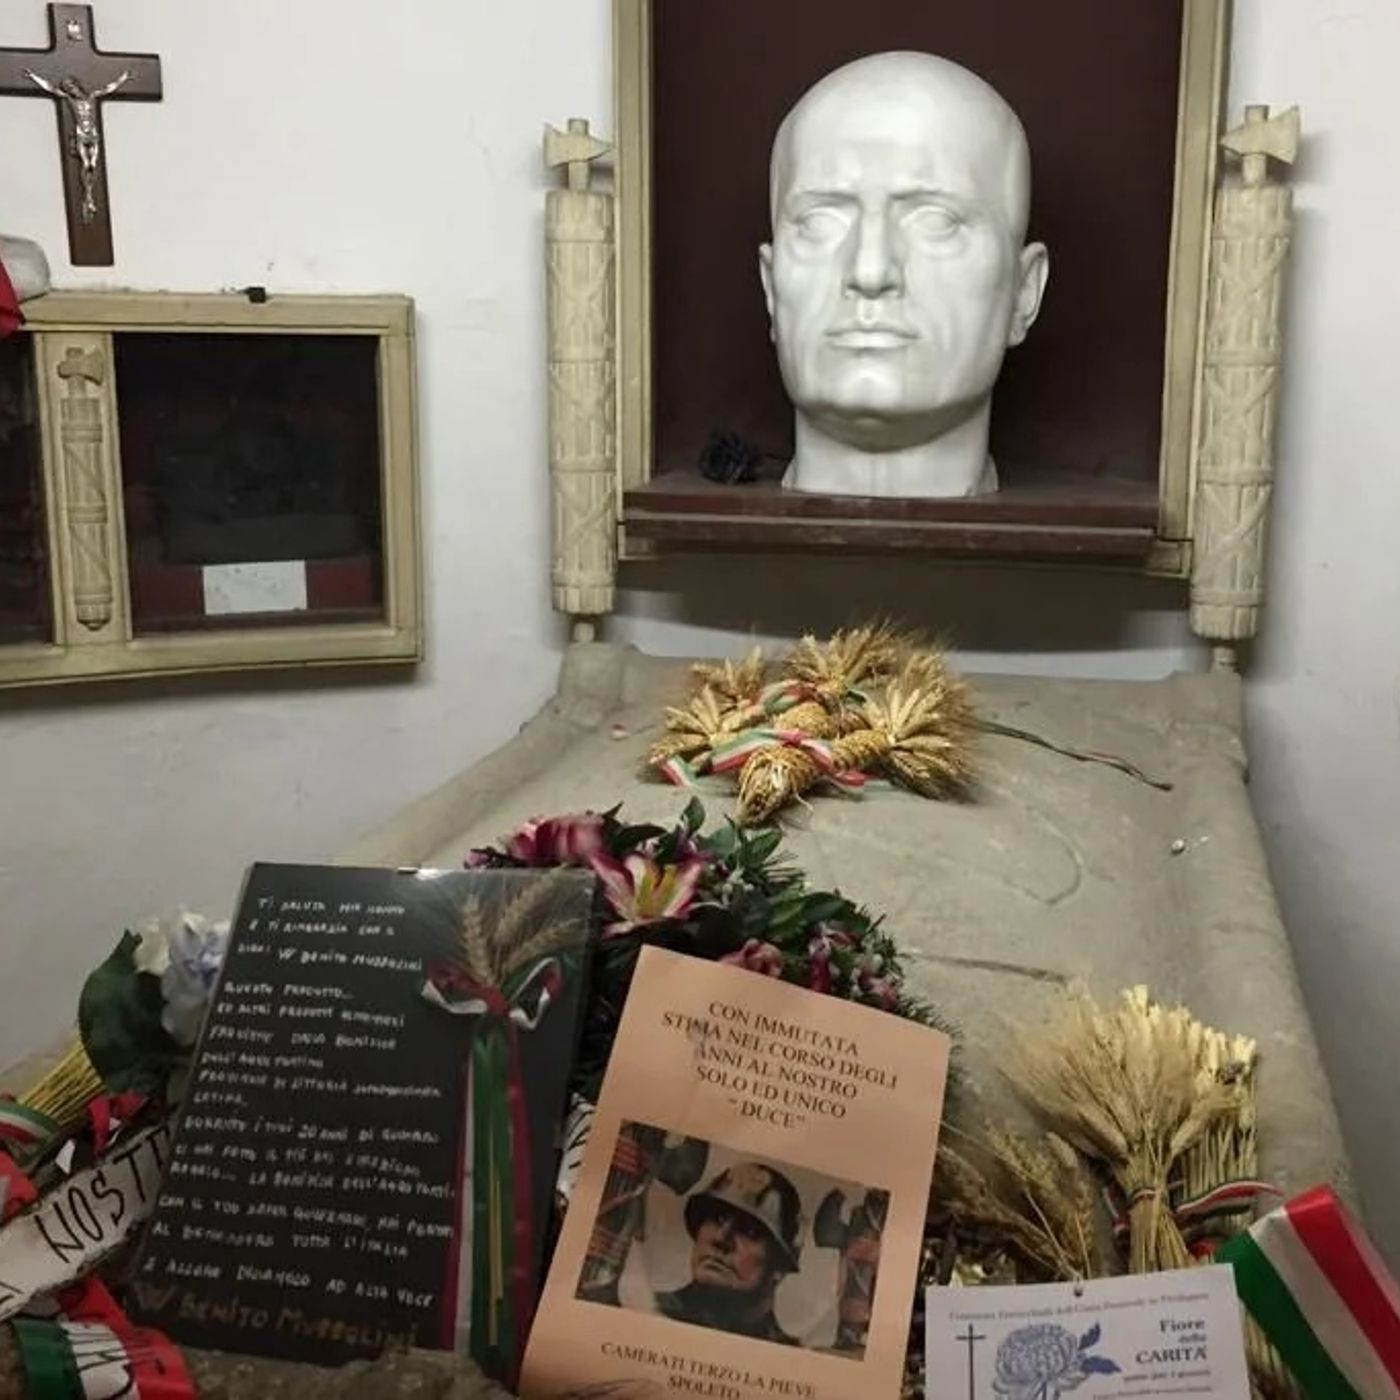 BestOfPillole - Chi ha rubato il corpo di Mussolini?